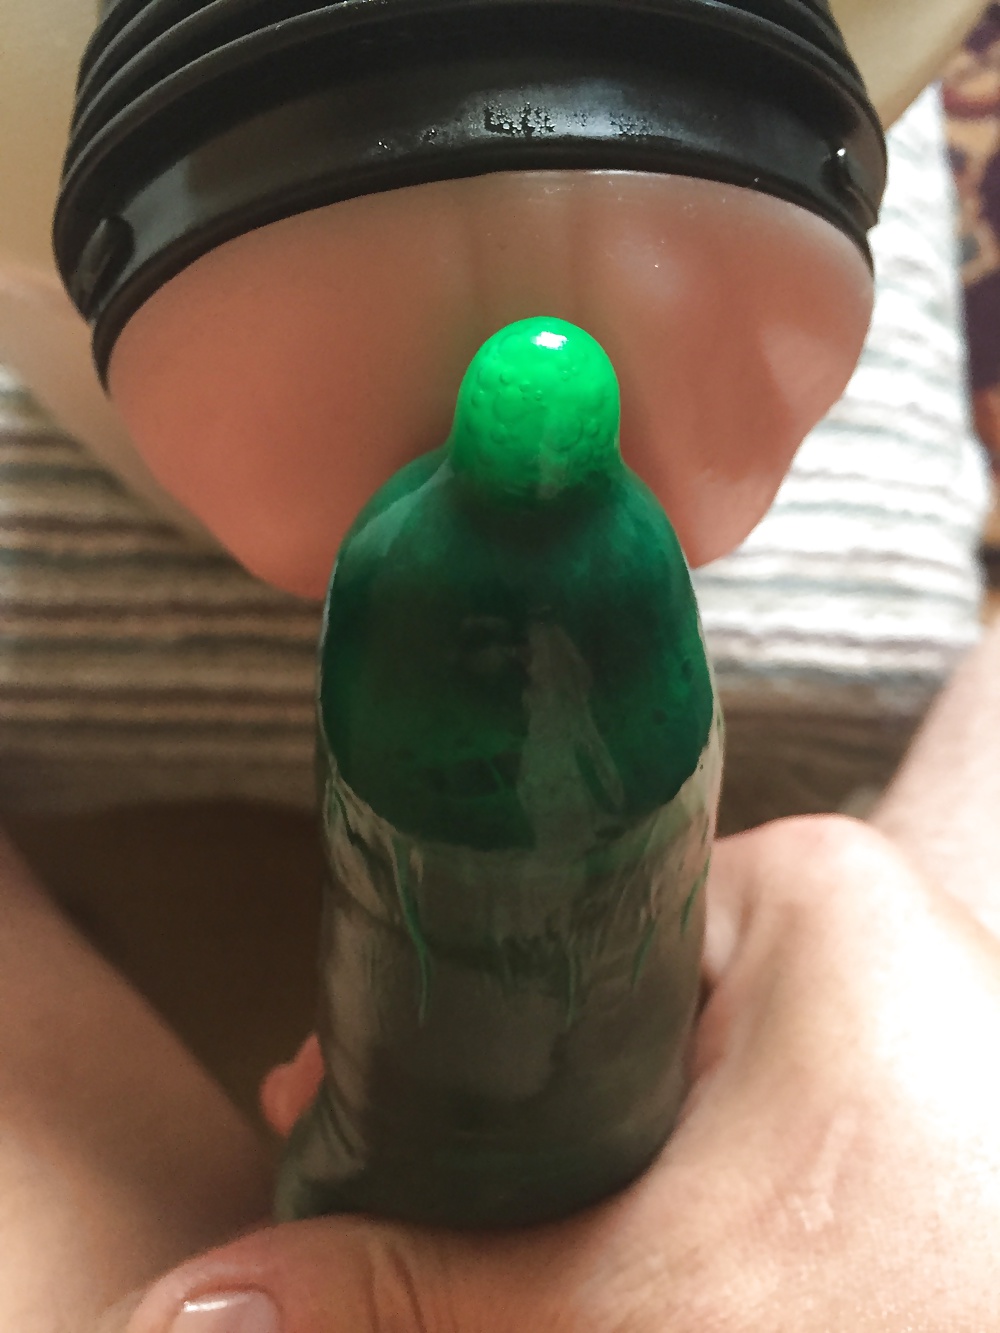 Flashlight fuck white creampie in Green Condom pict gal